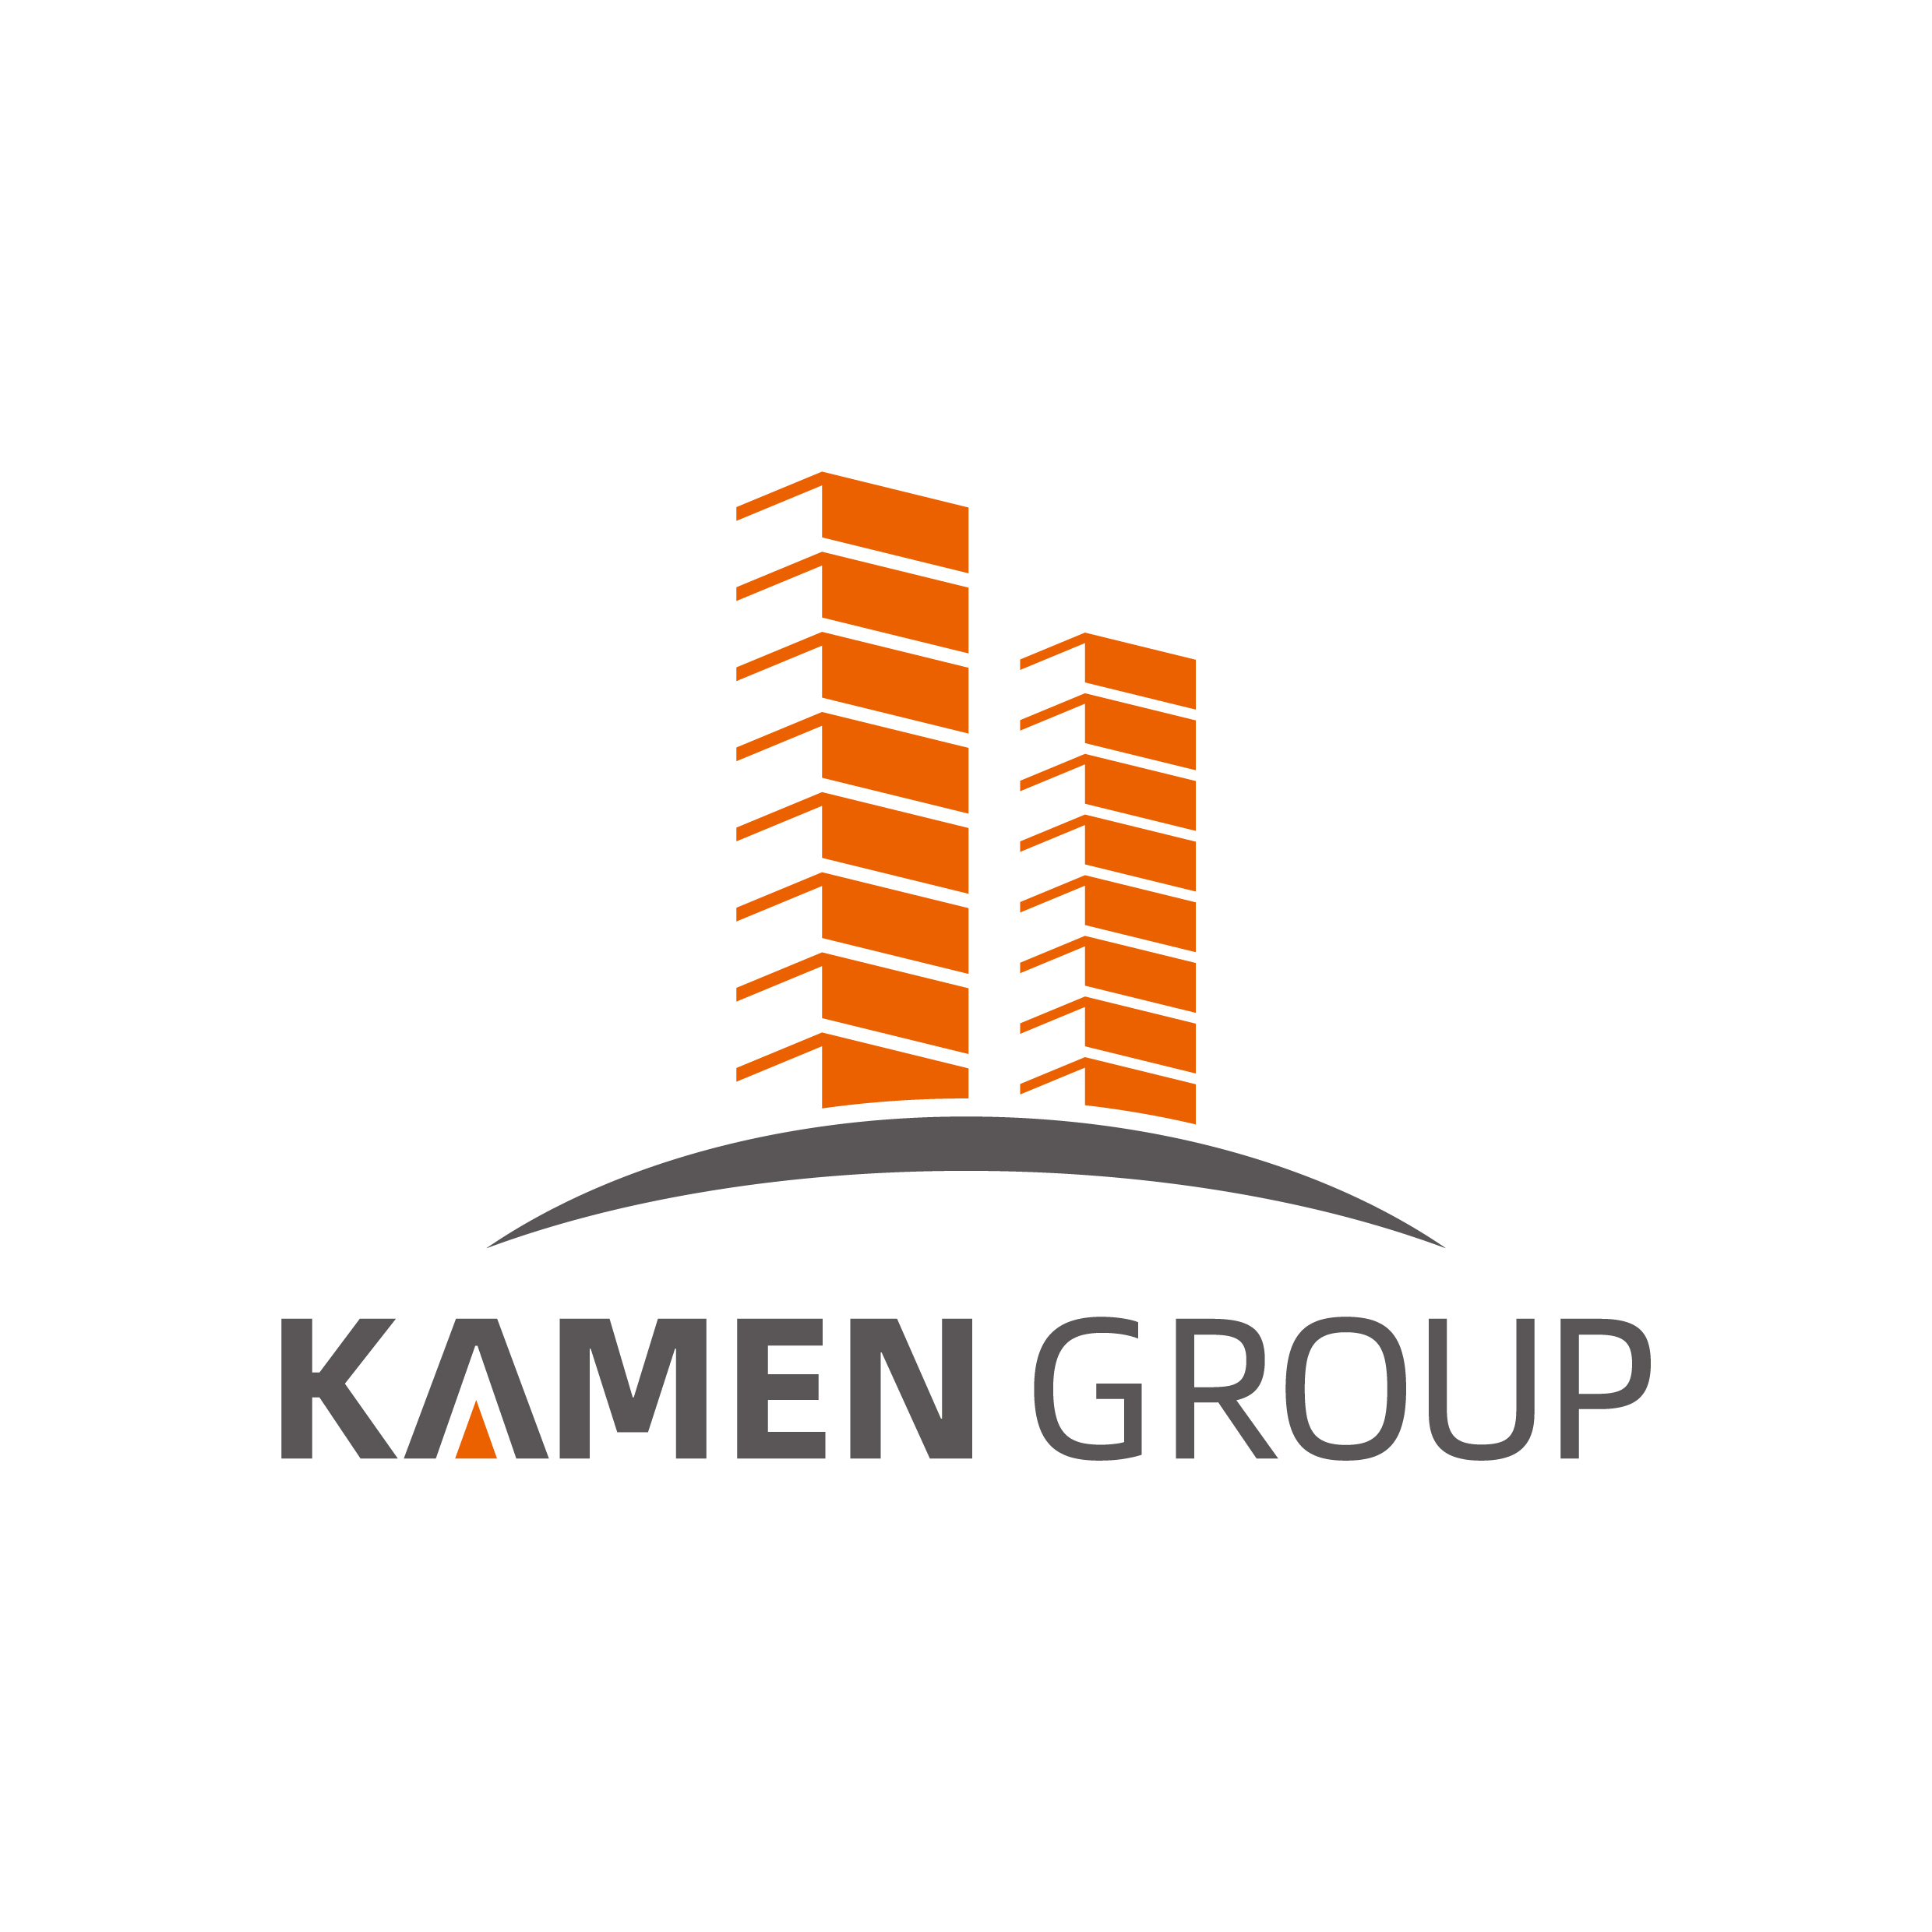 Kamen Group's logo